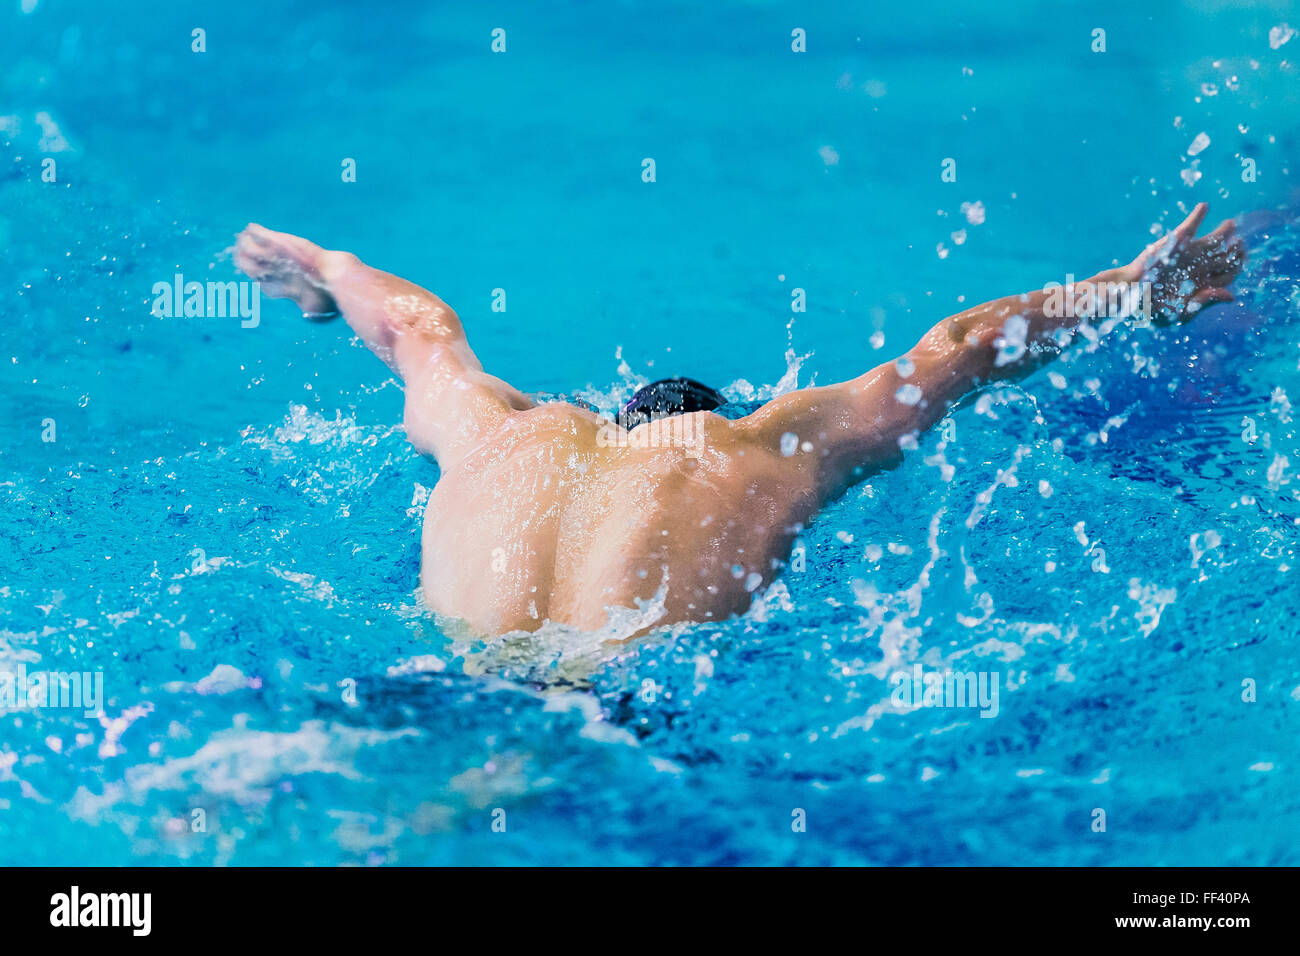 Giovane atleta nuotatore nuoto nella piscina butterfly. vista posteriore Foto Stock